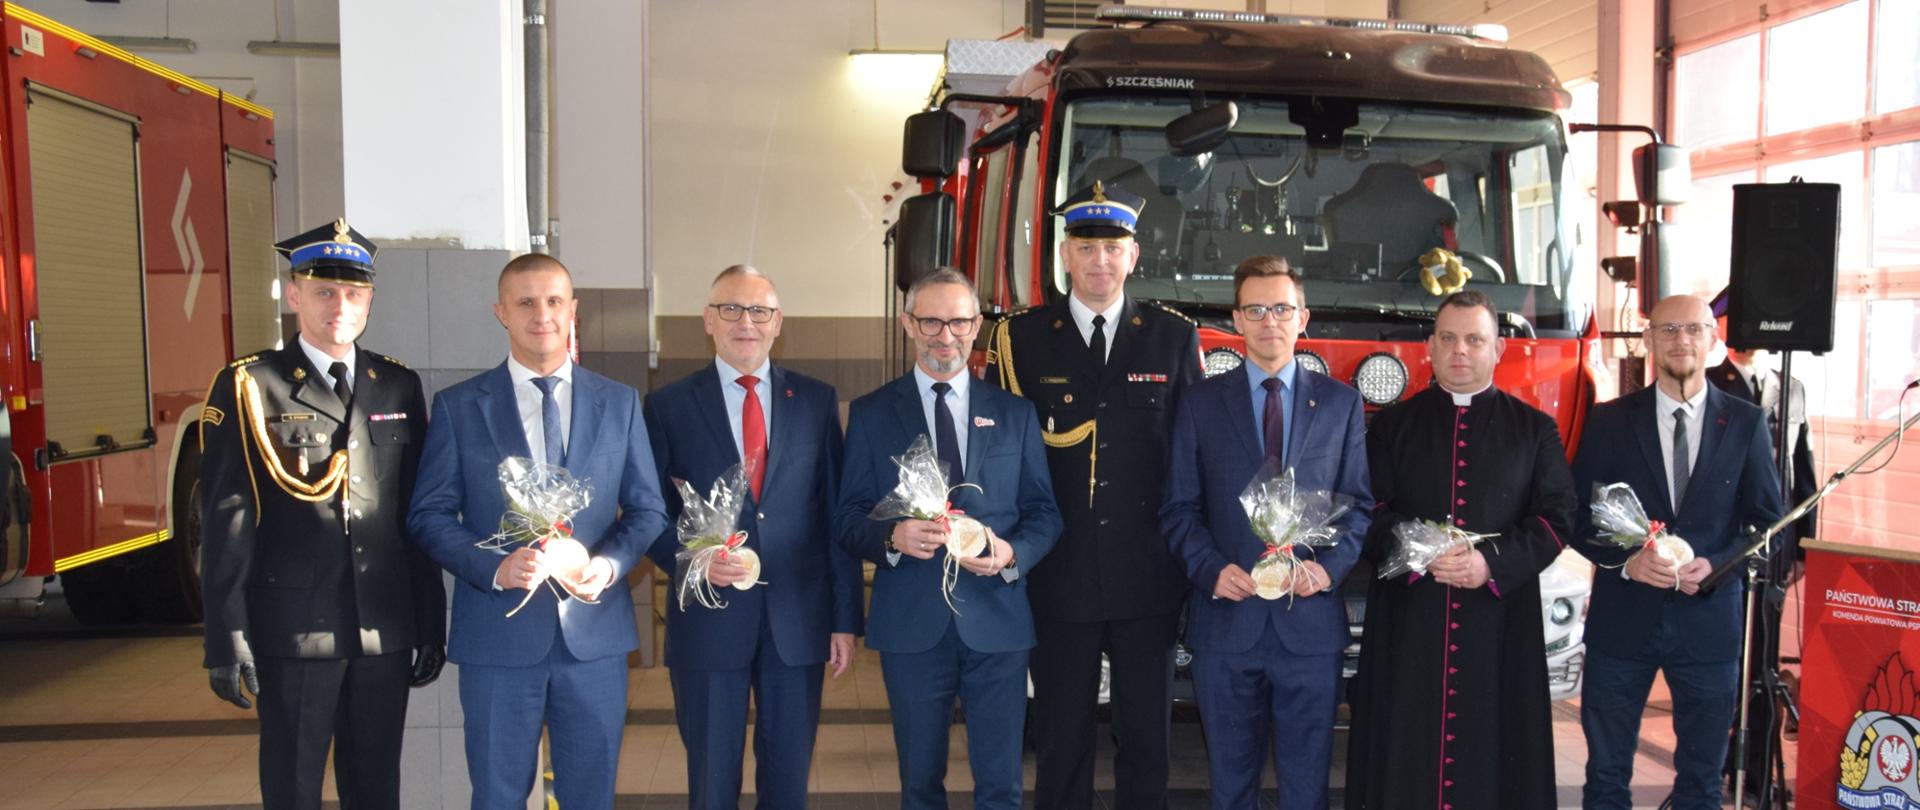 Uroczyste przekazanie dwóch nowych samochodów pożarniczych dla KP PSP W Wąbrzeźnie.- zaproszeni goście.